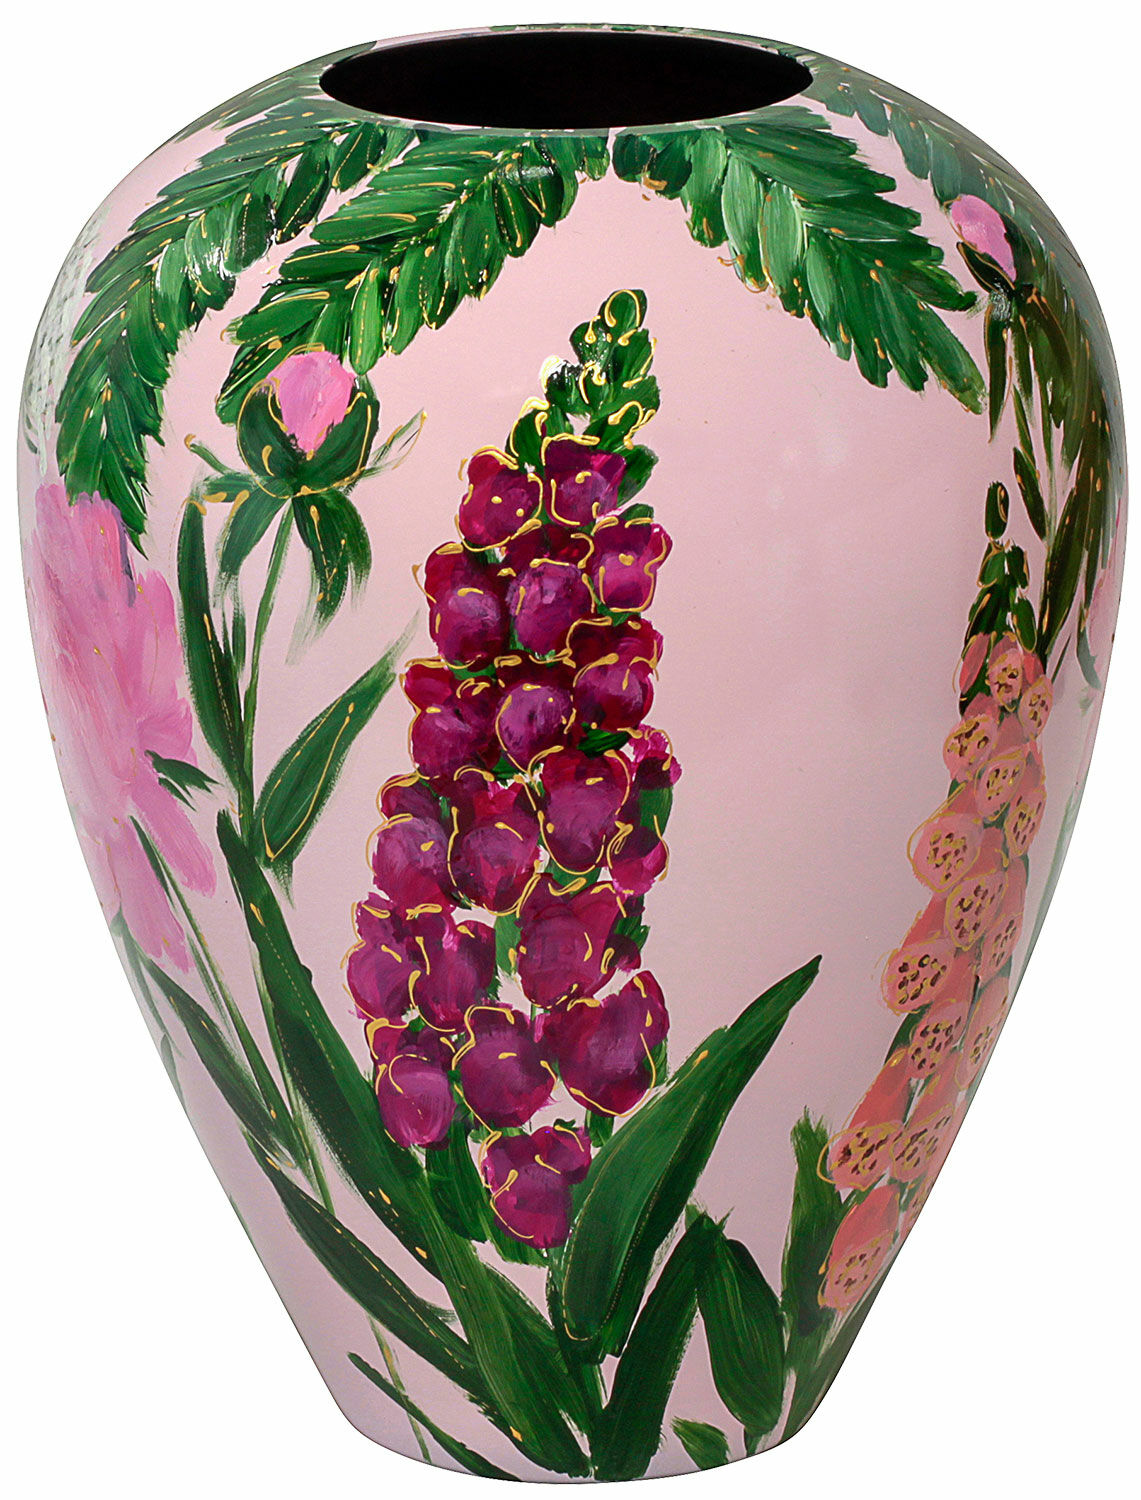 Glass vase "Pink Summer" by Milou van Schaik Martinet